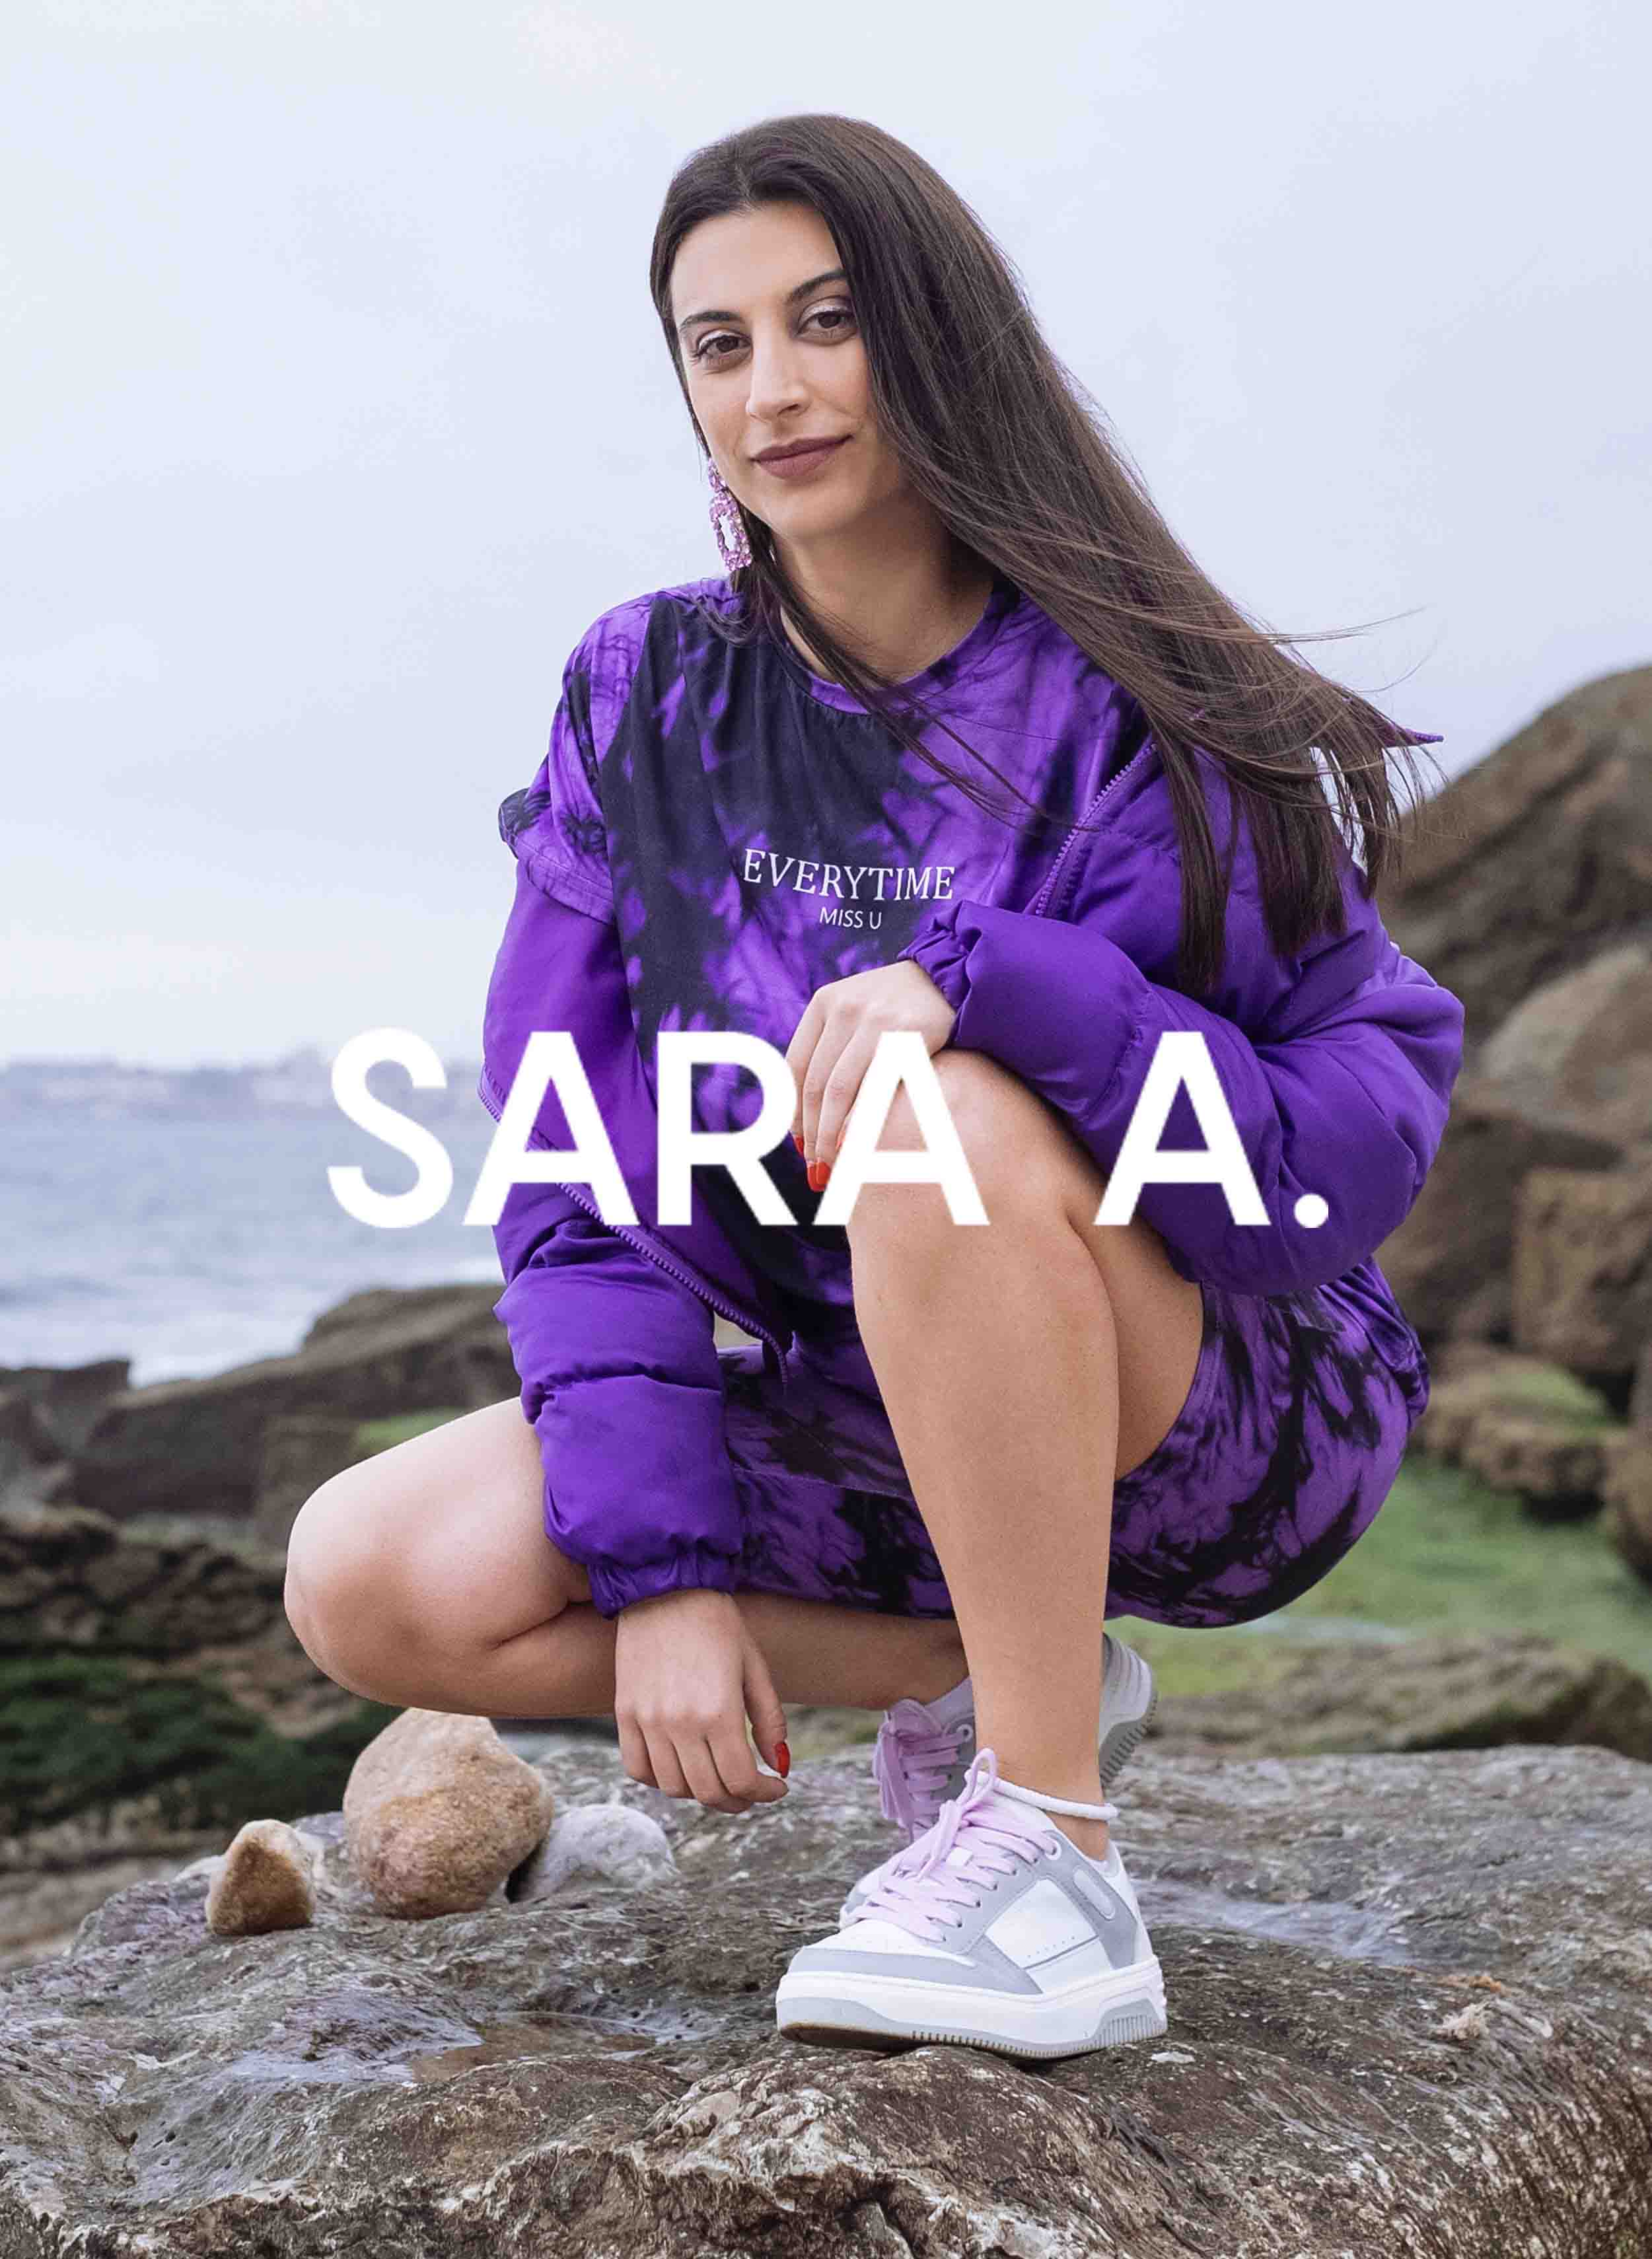 Sara con una camisa morada, combinada con Diverge sneakers, mostrando sus zapatos personalizados y promoviendo el impacto social a través del proyecto Imagine.